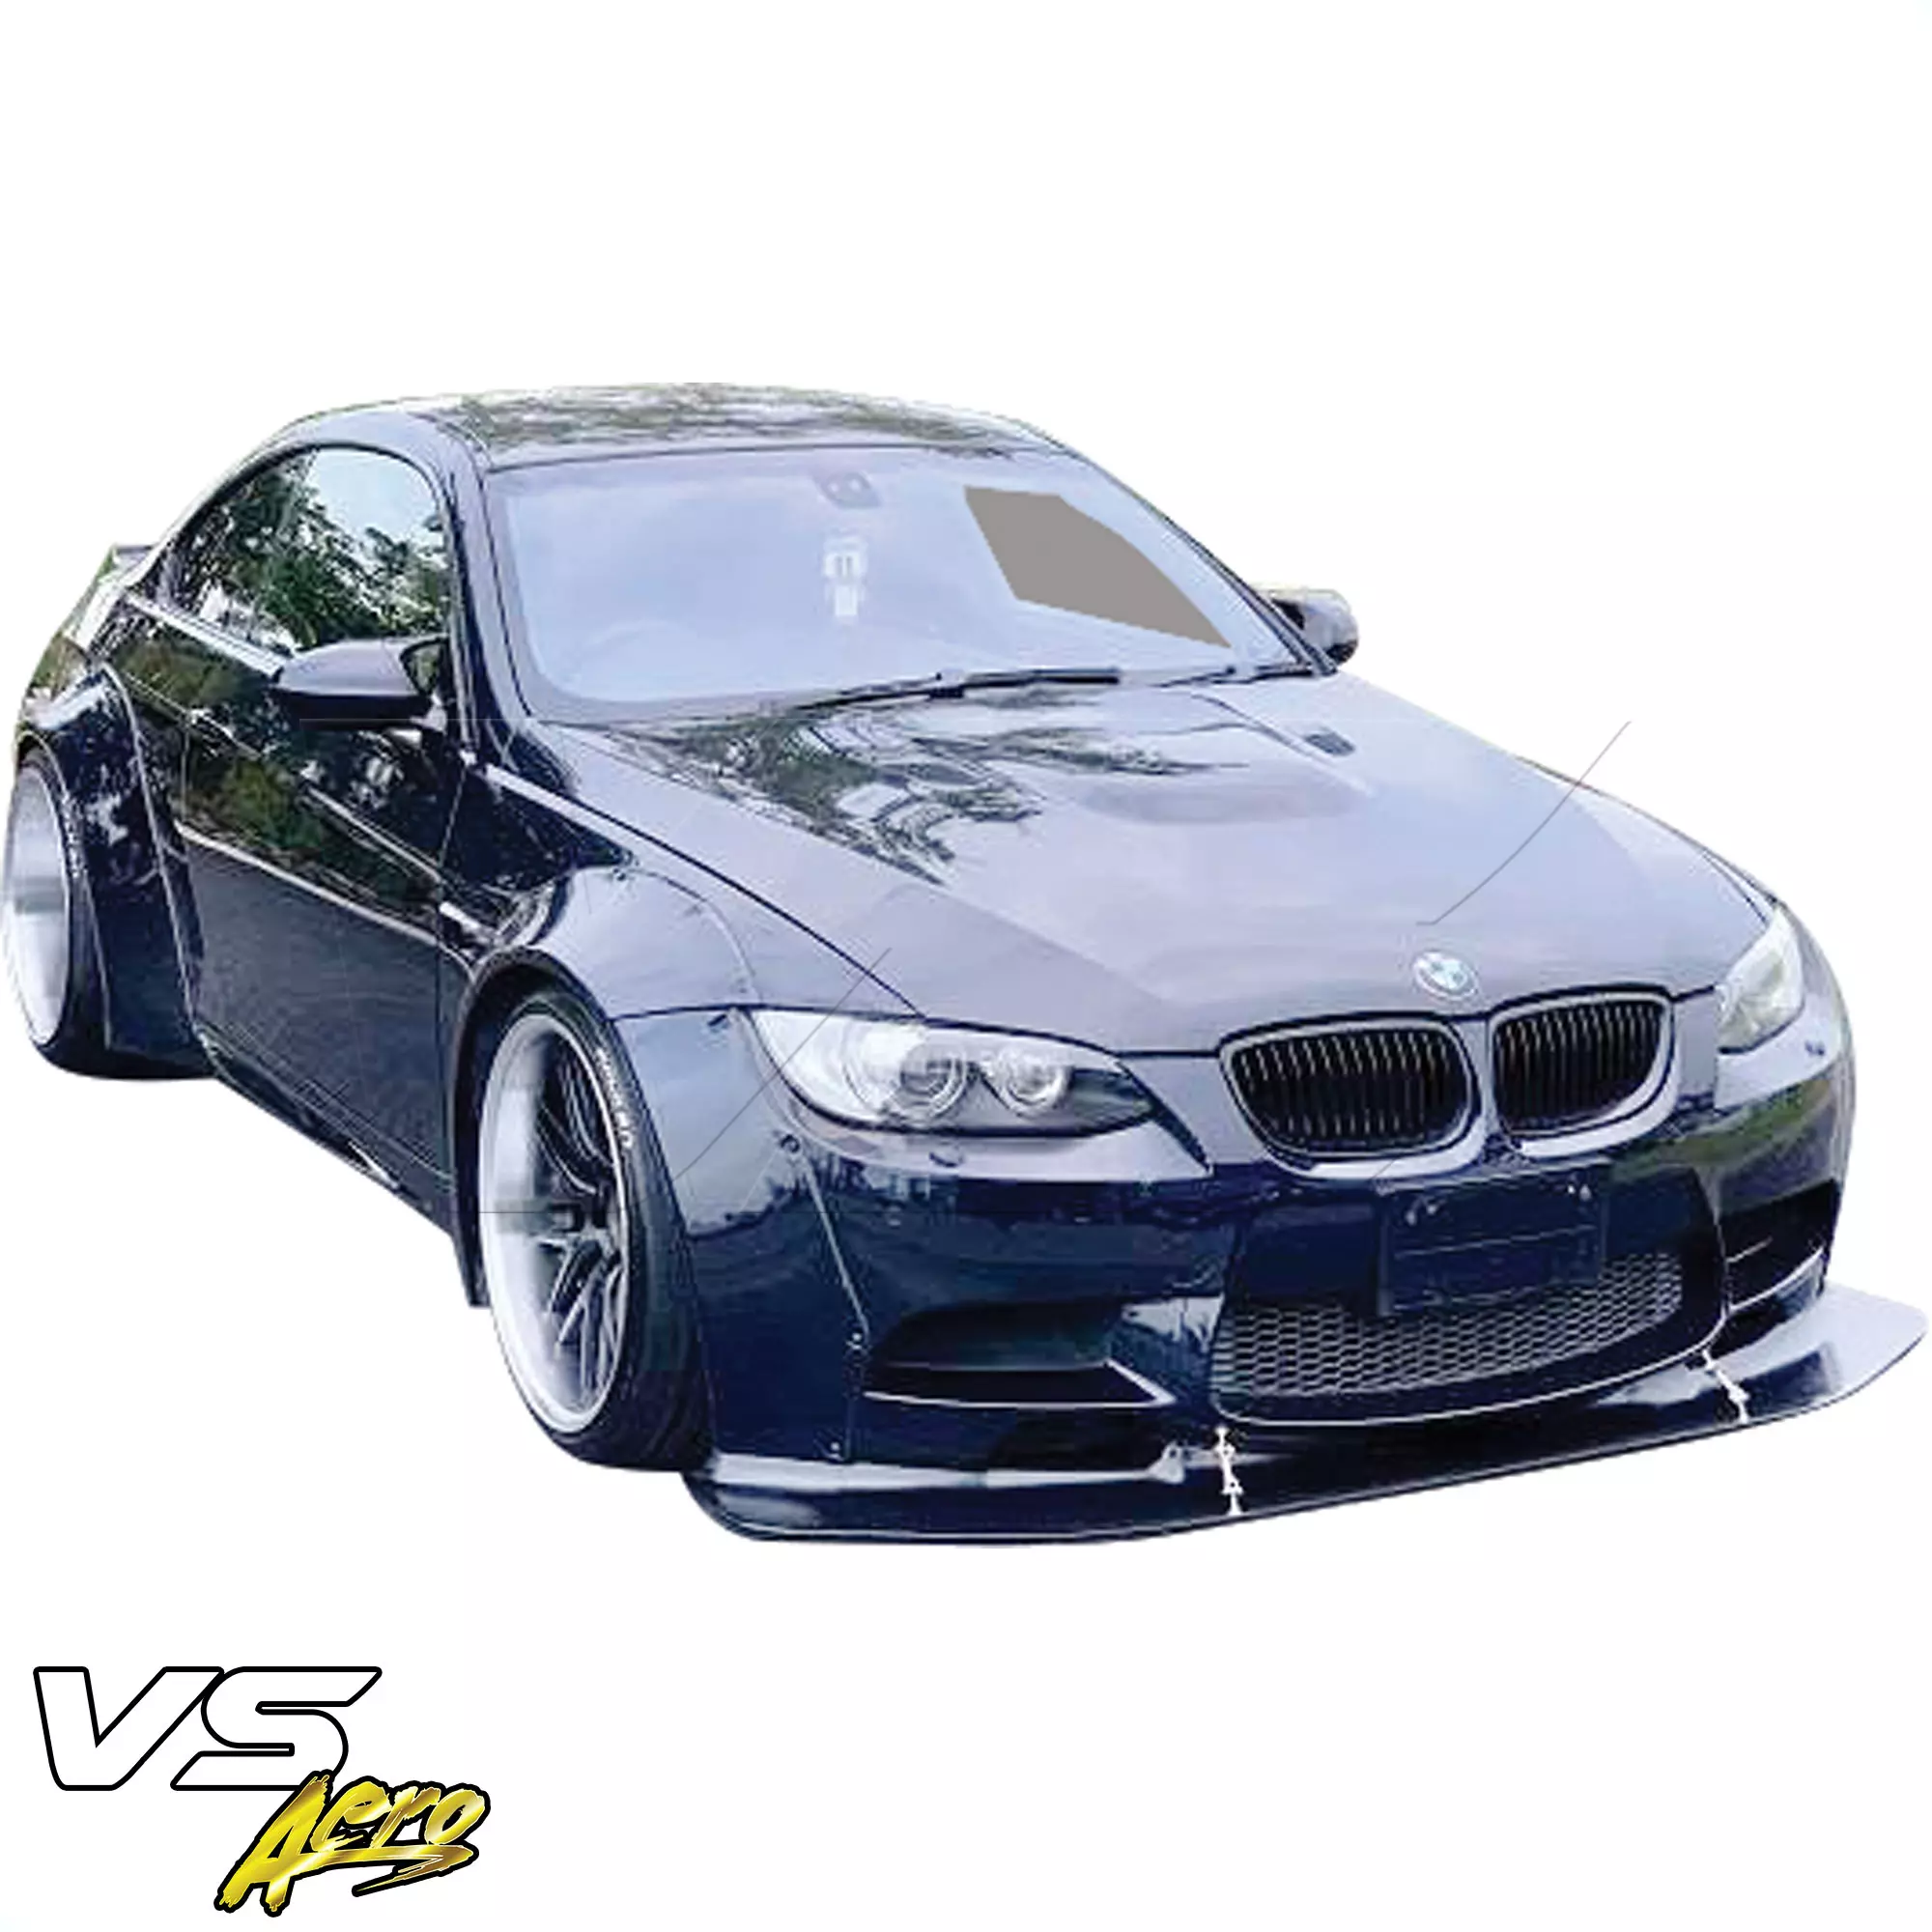 VSaero FRP LBPE Wide Body Kit > BMW M3 E92 2008-2013 > 2dr - Image 18